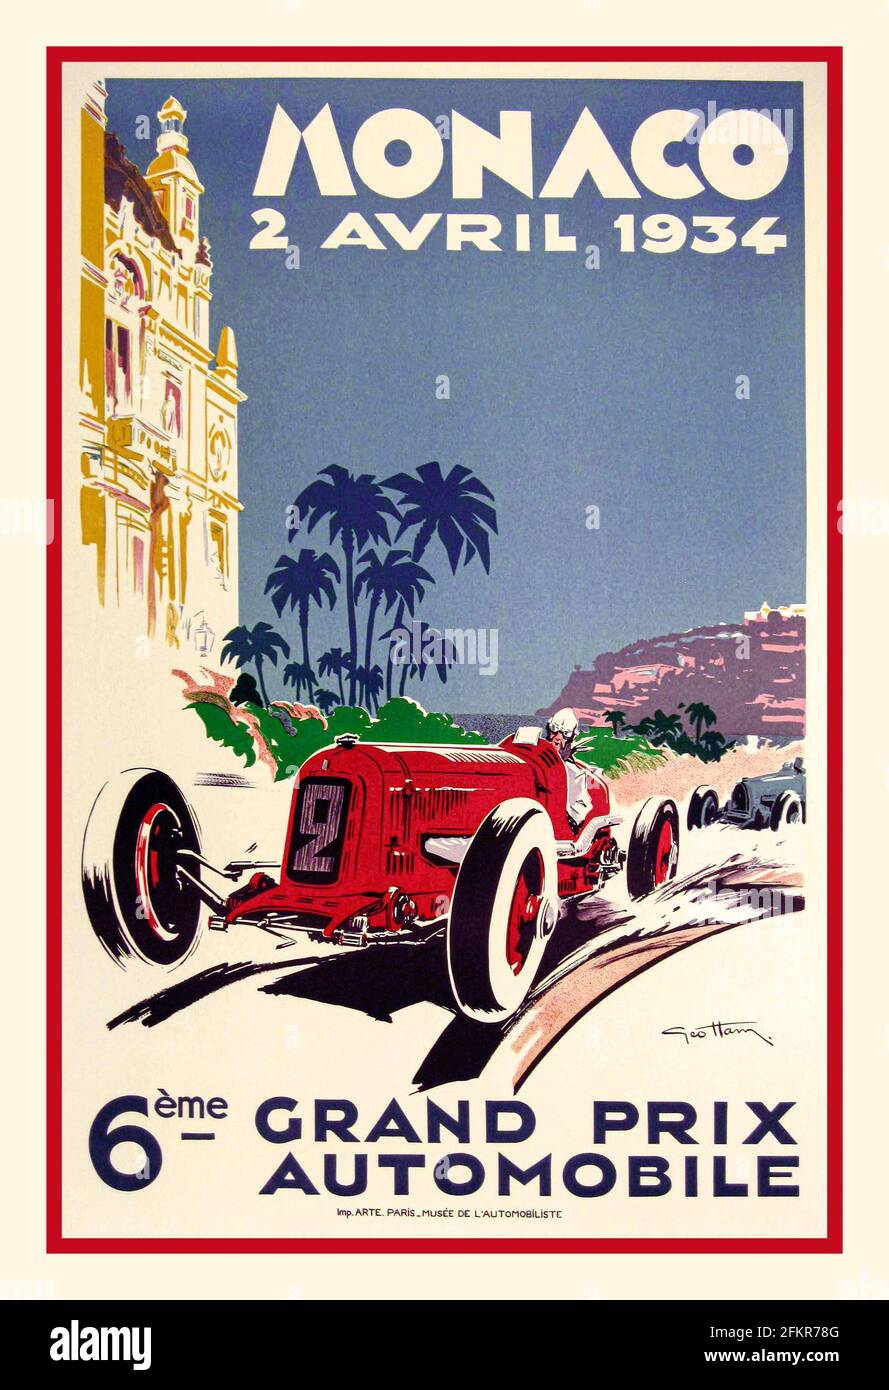 MONACO 1934 Grand Prix Vintage retro poster for Monaco Grand Prix motor race 'Monaco 2 Avril 1934 6ème Grand Prix Automobile' Stock Photo